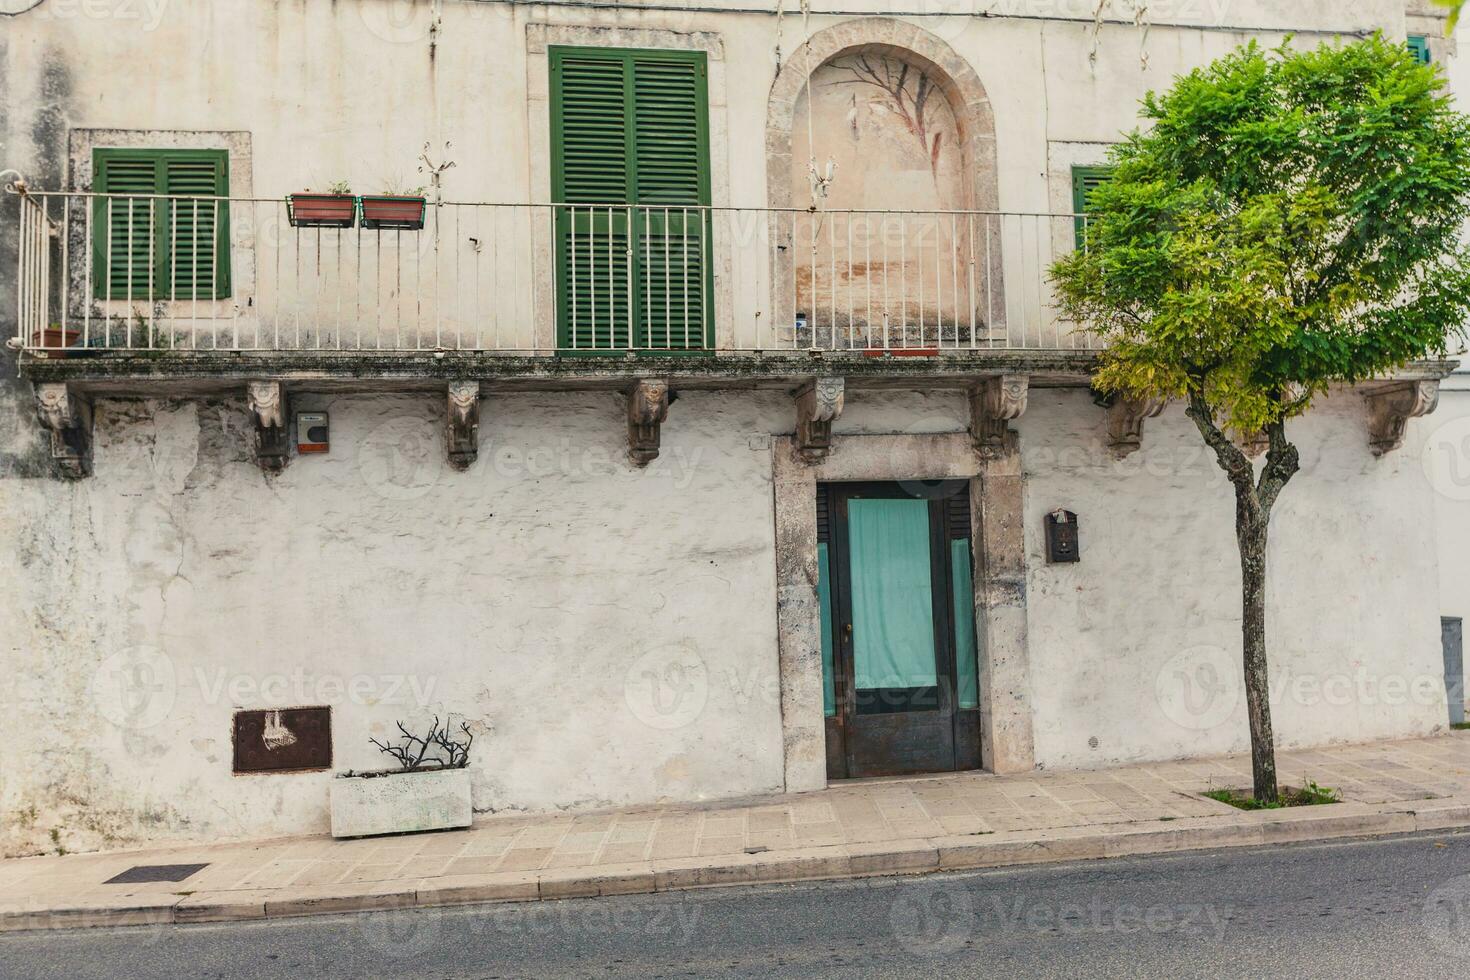 visie van de oud stad- van Martina franca met een mooi huizen geschilderd in wit. foto